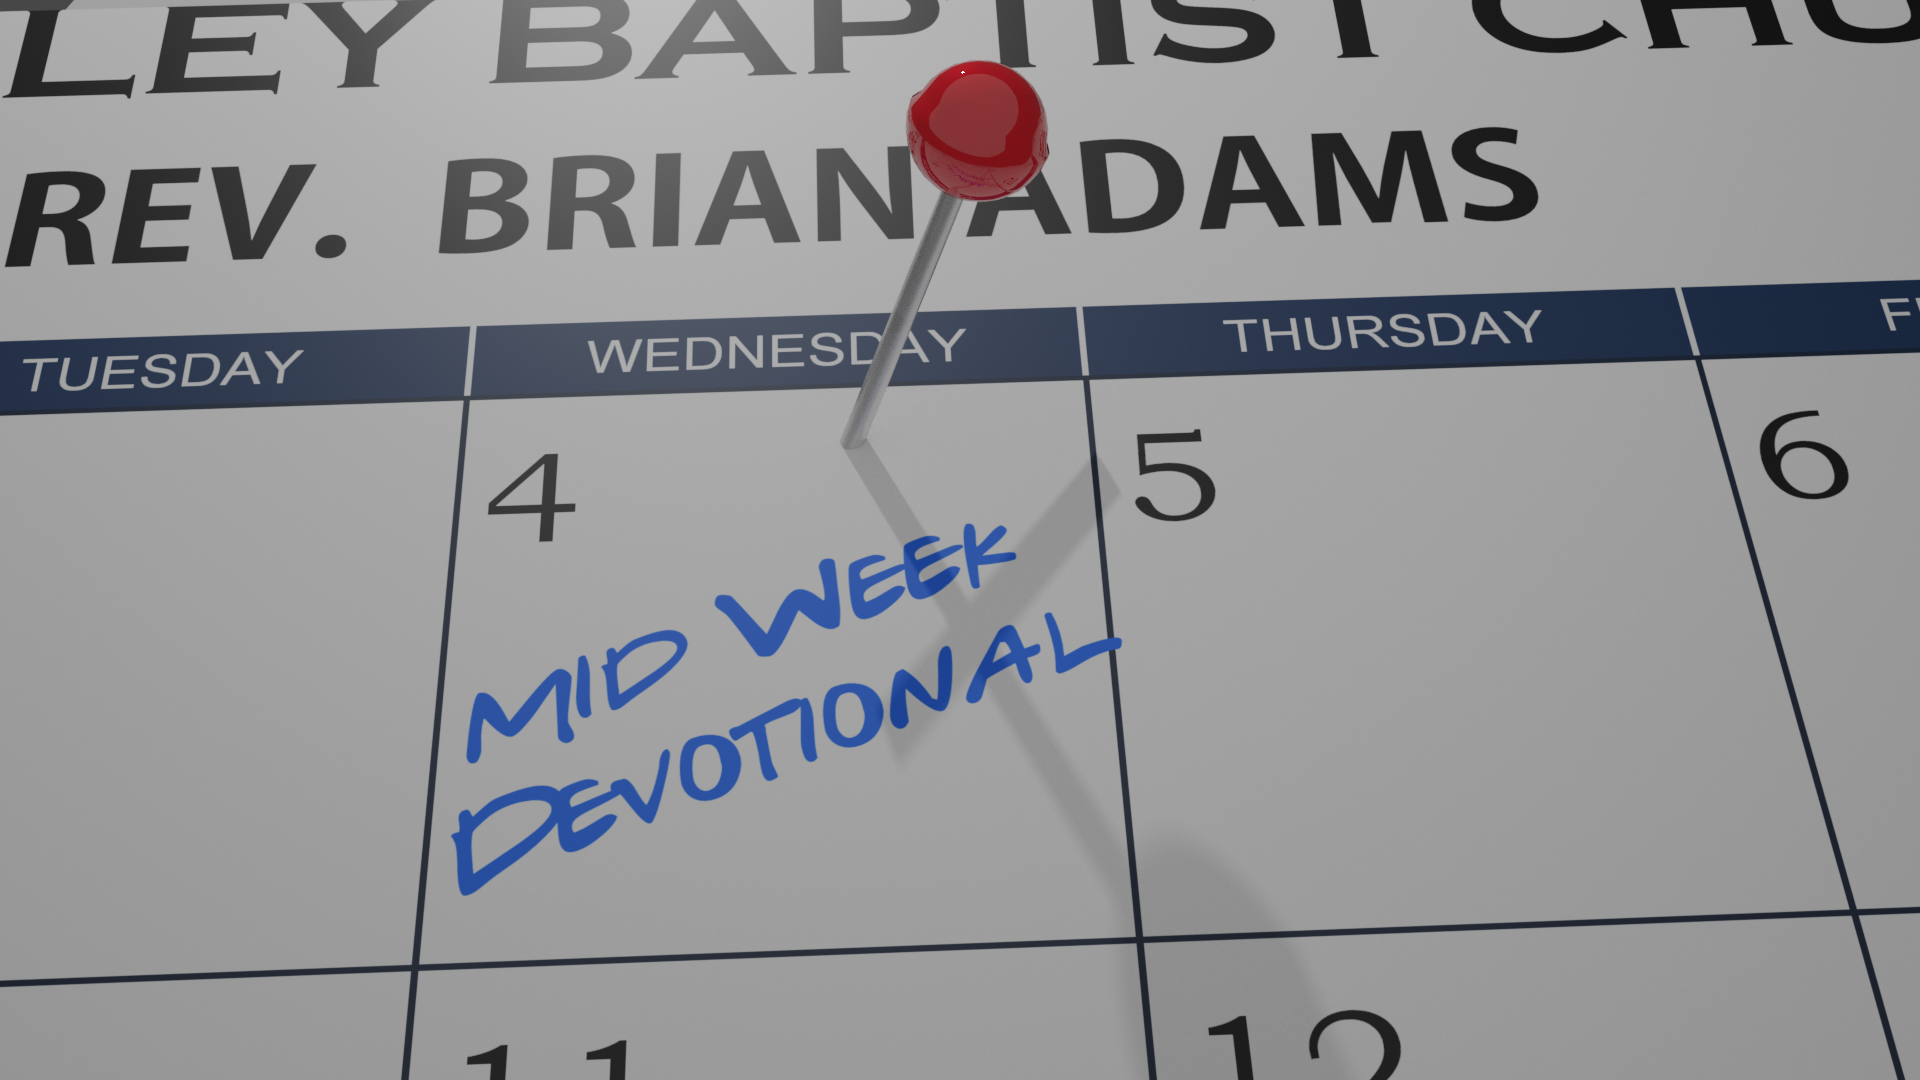 Mid-Week Devotional 12/02/20